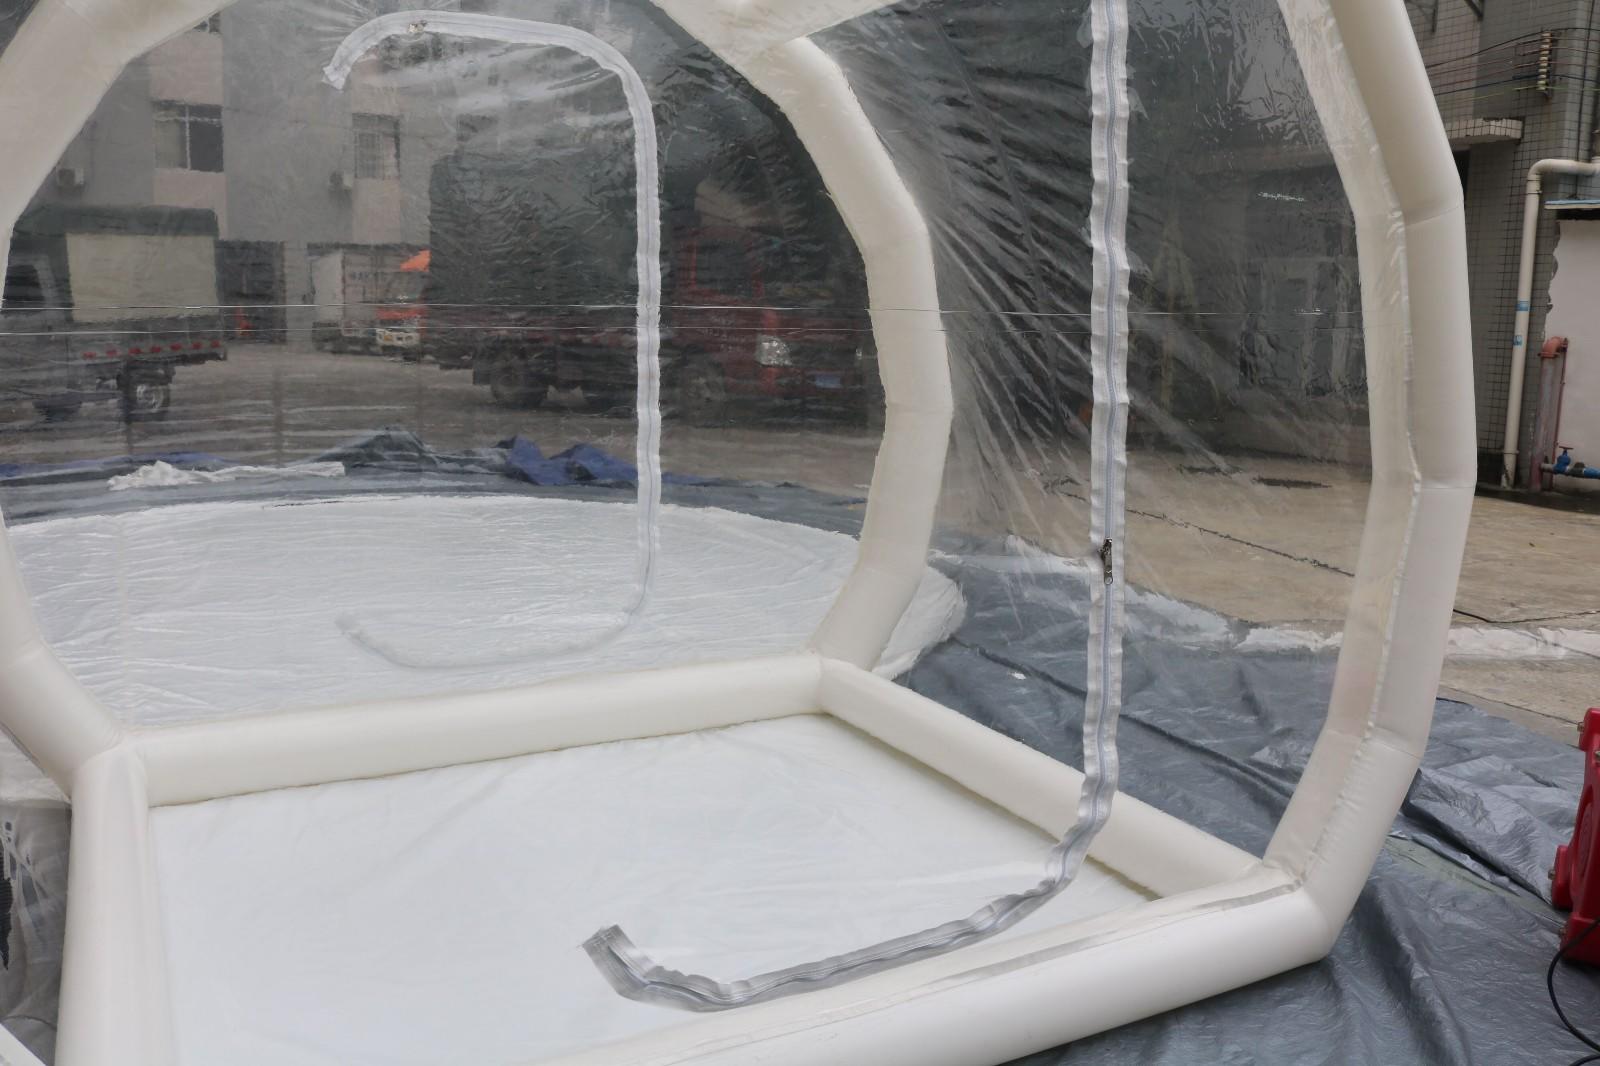 JOY inflatable bubble tent manufacturer wholesale for child